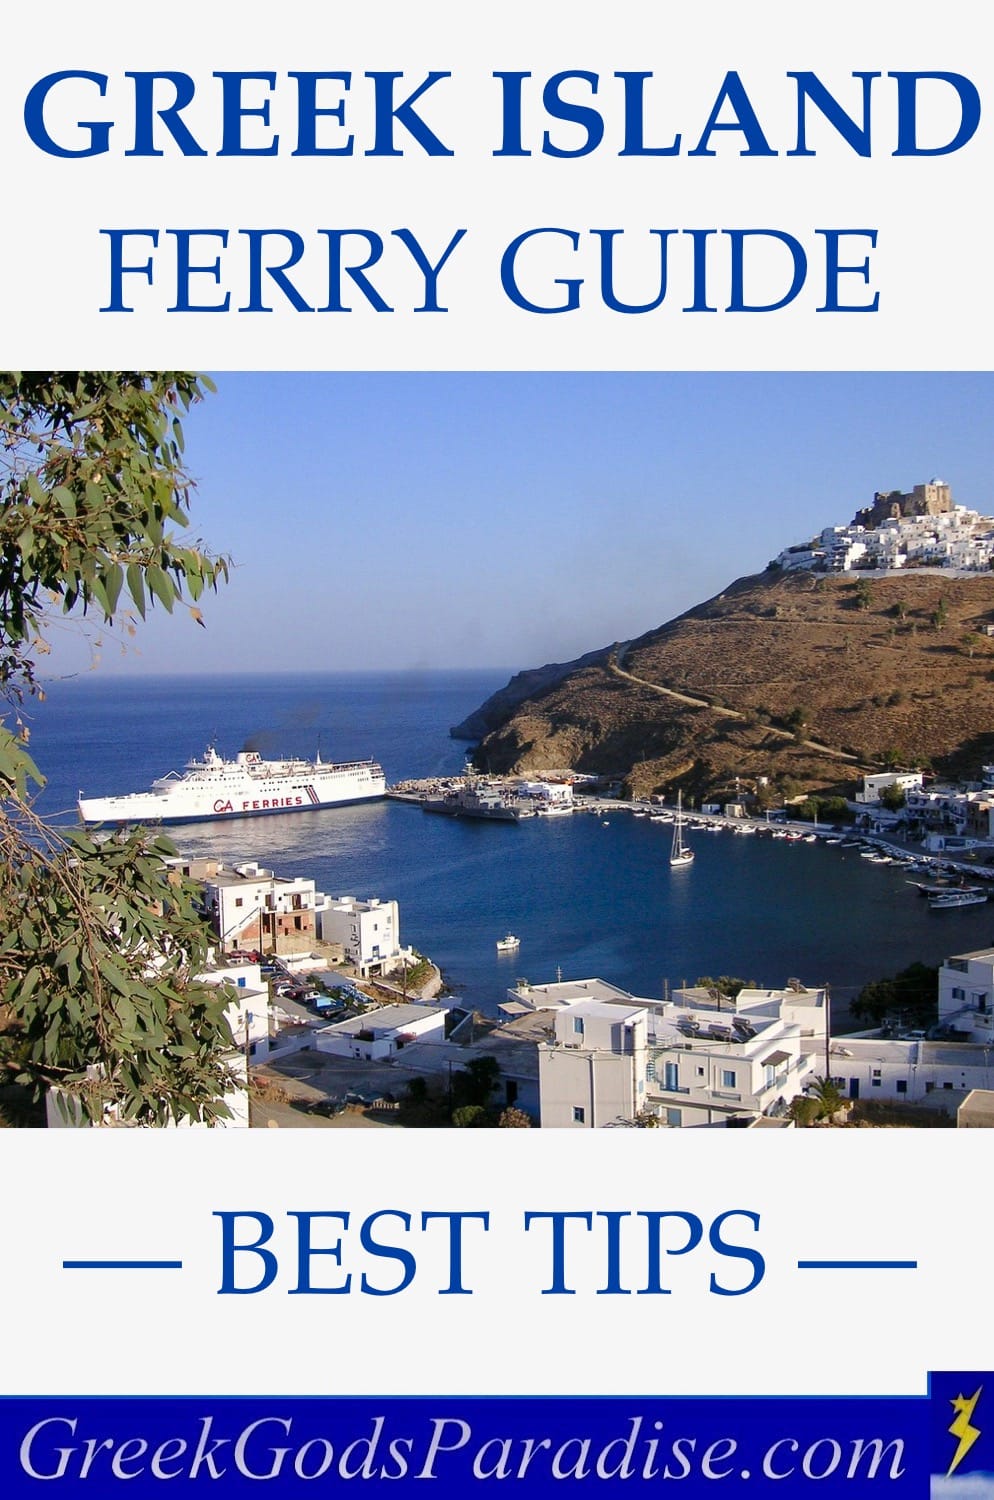 Greek Island Ferry Guide Best Tips